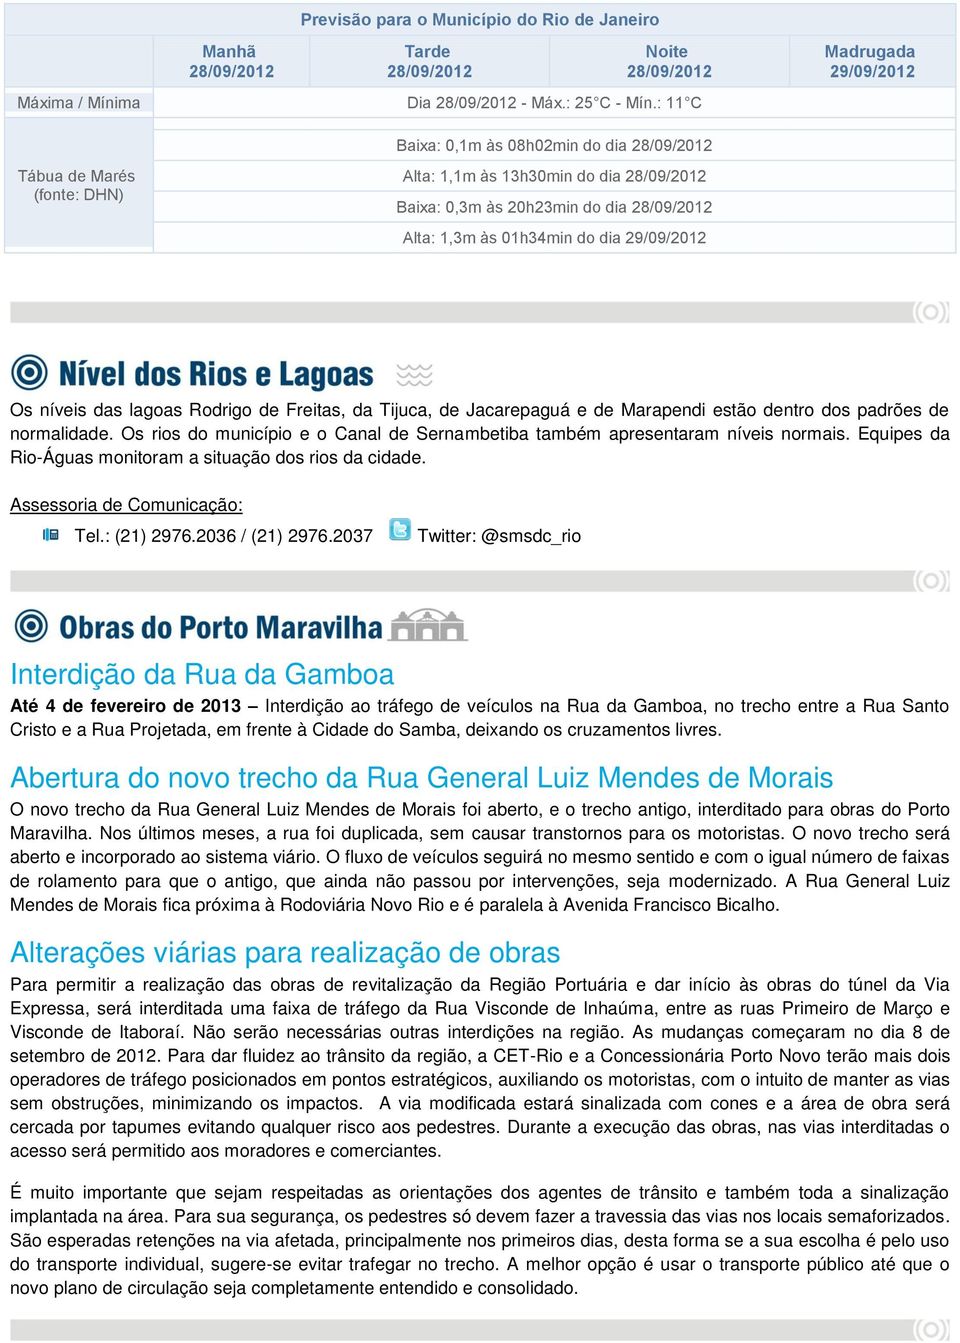 29/09/2012 Os níveis das lagoas Rodrigo de Freitas, da Tijuca, de Jacarepaguá e de Marapendi estão dentro dos padrões de normalidade.